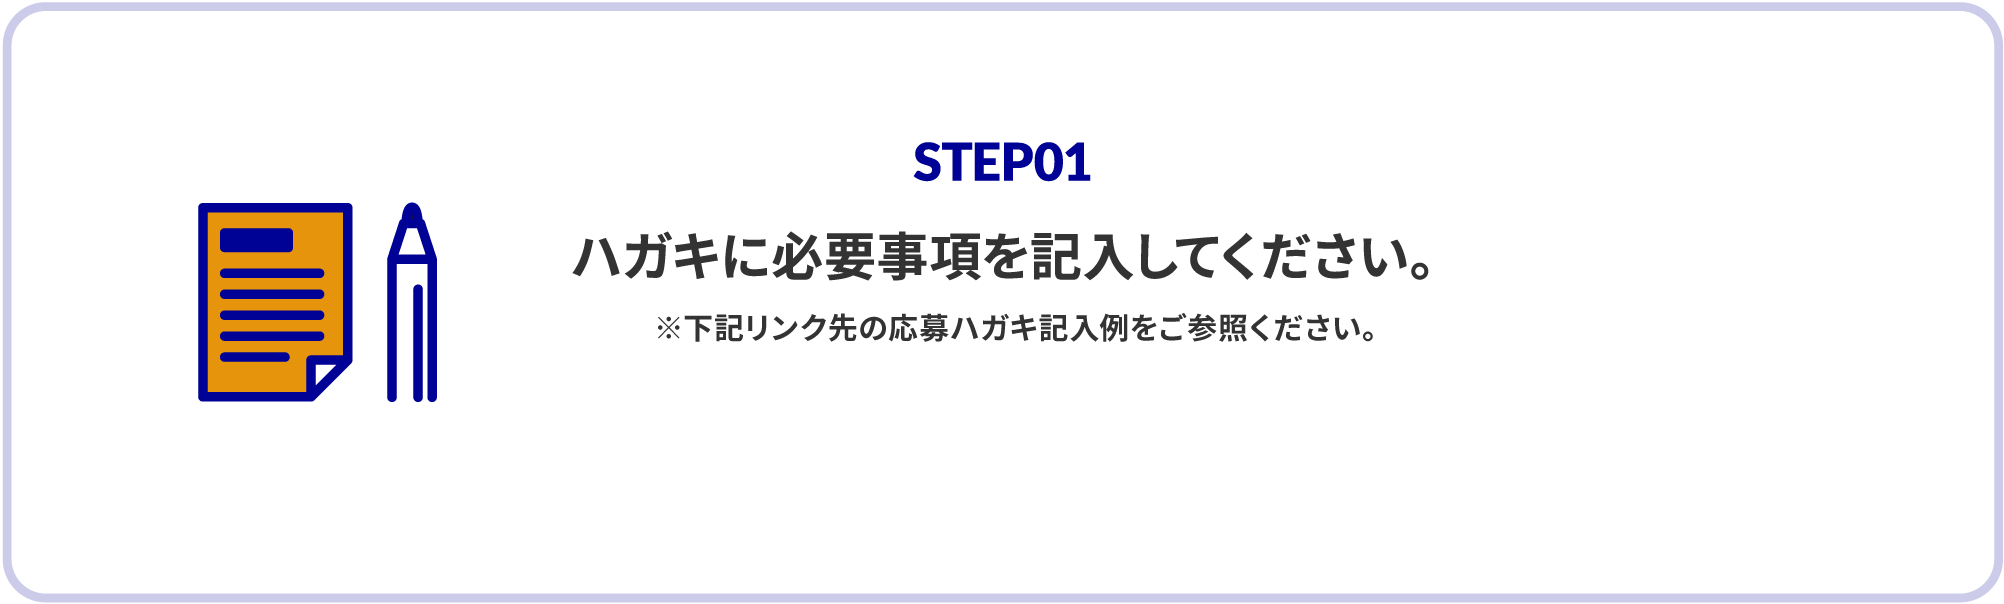 STEP1 はがきサンプル